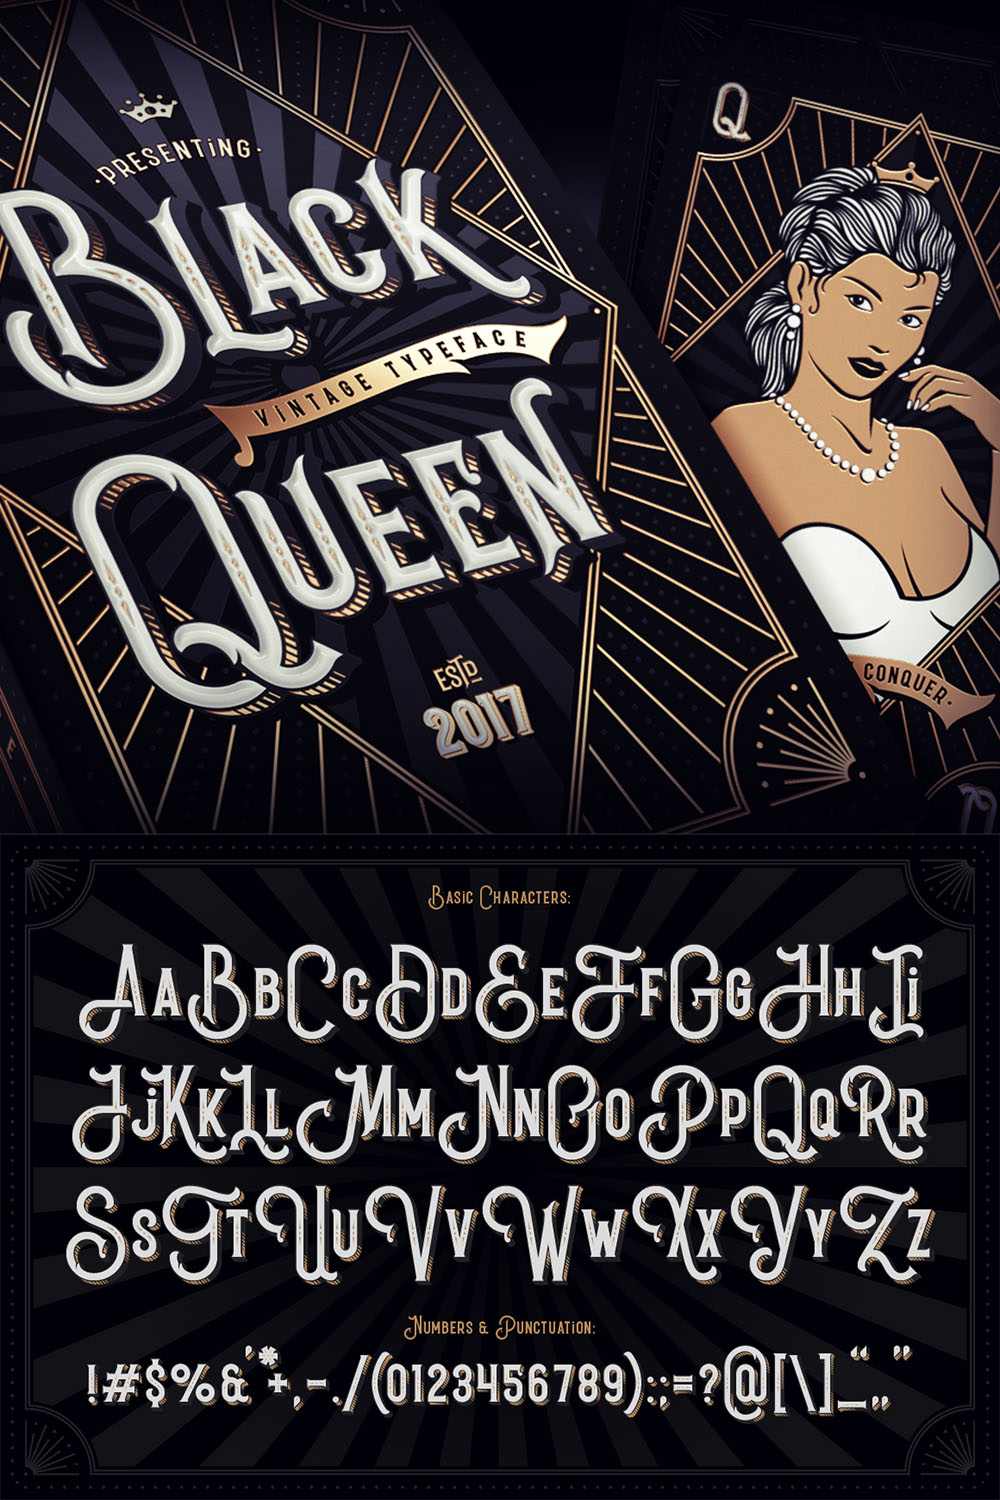 Vintage Typeface Font Black Queen pinterest image.